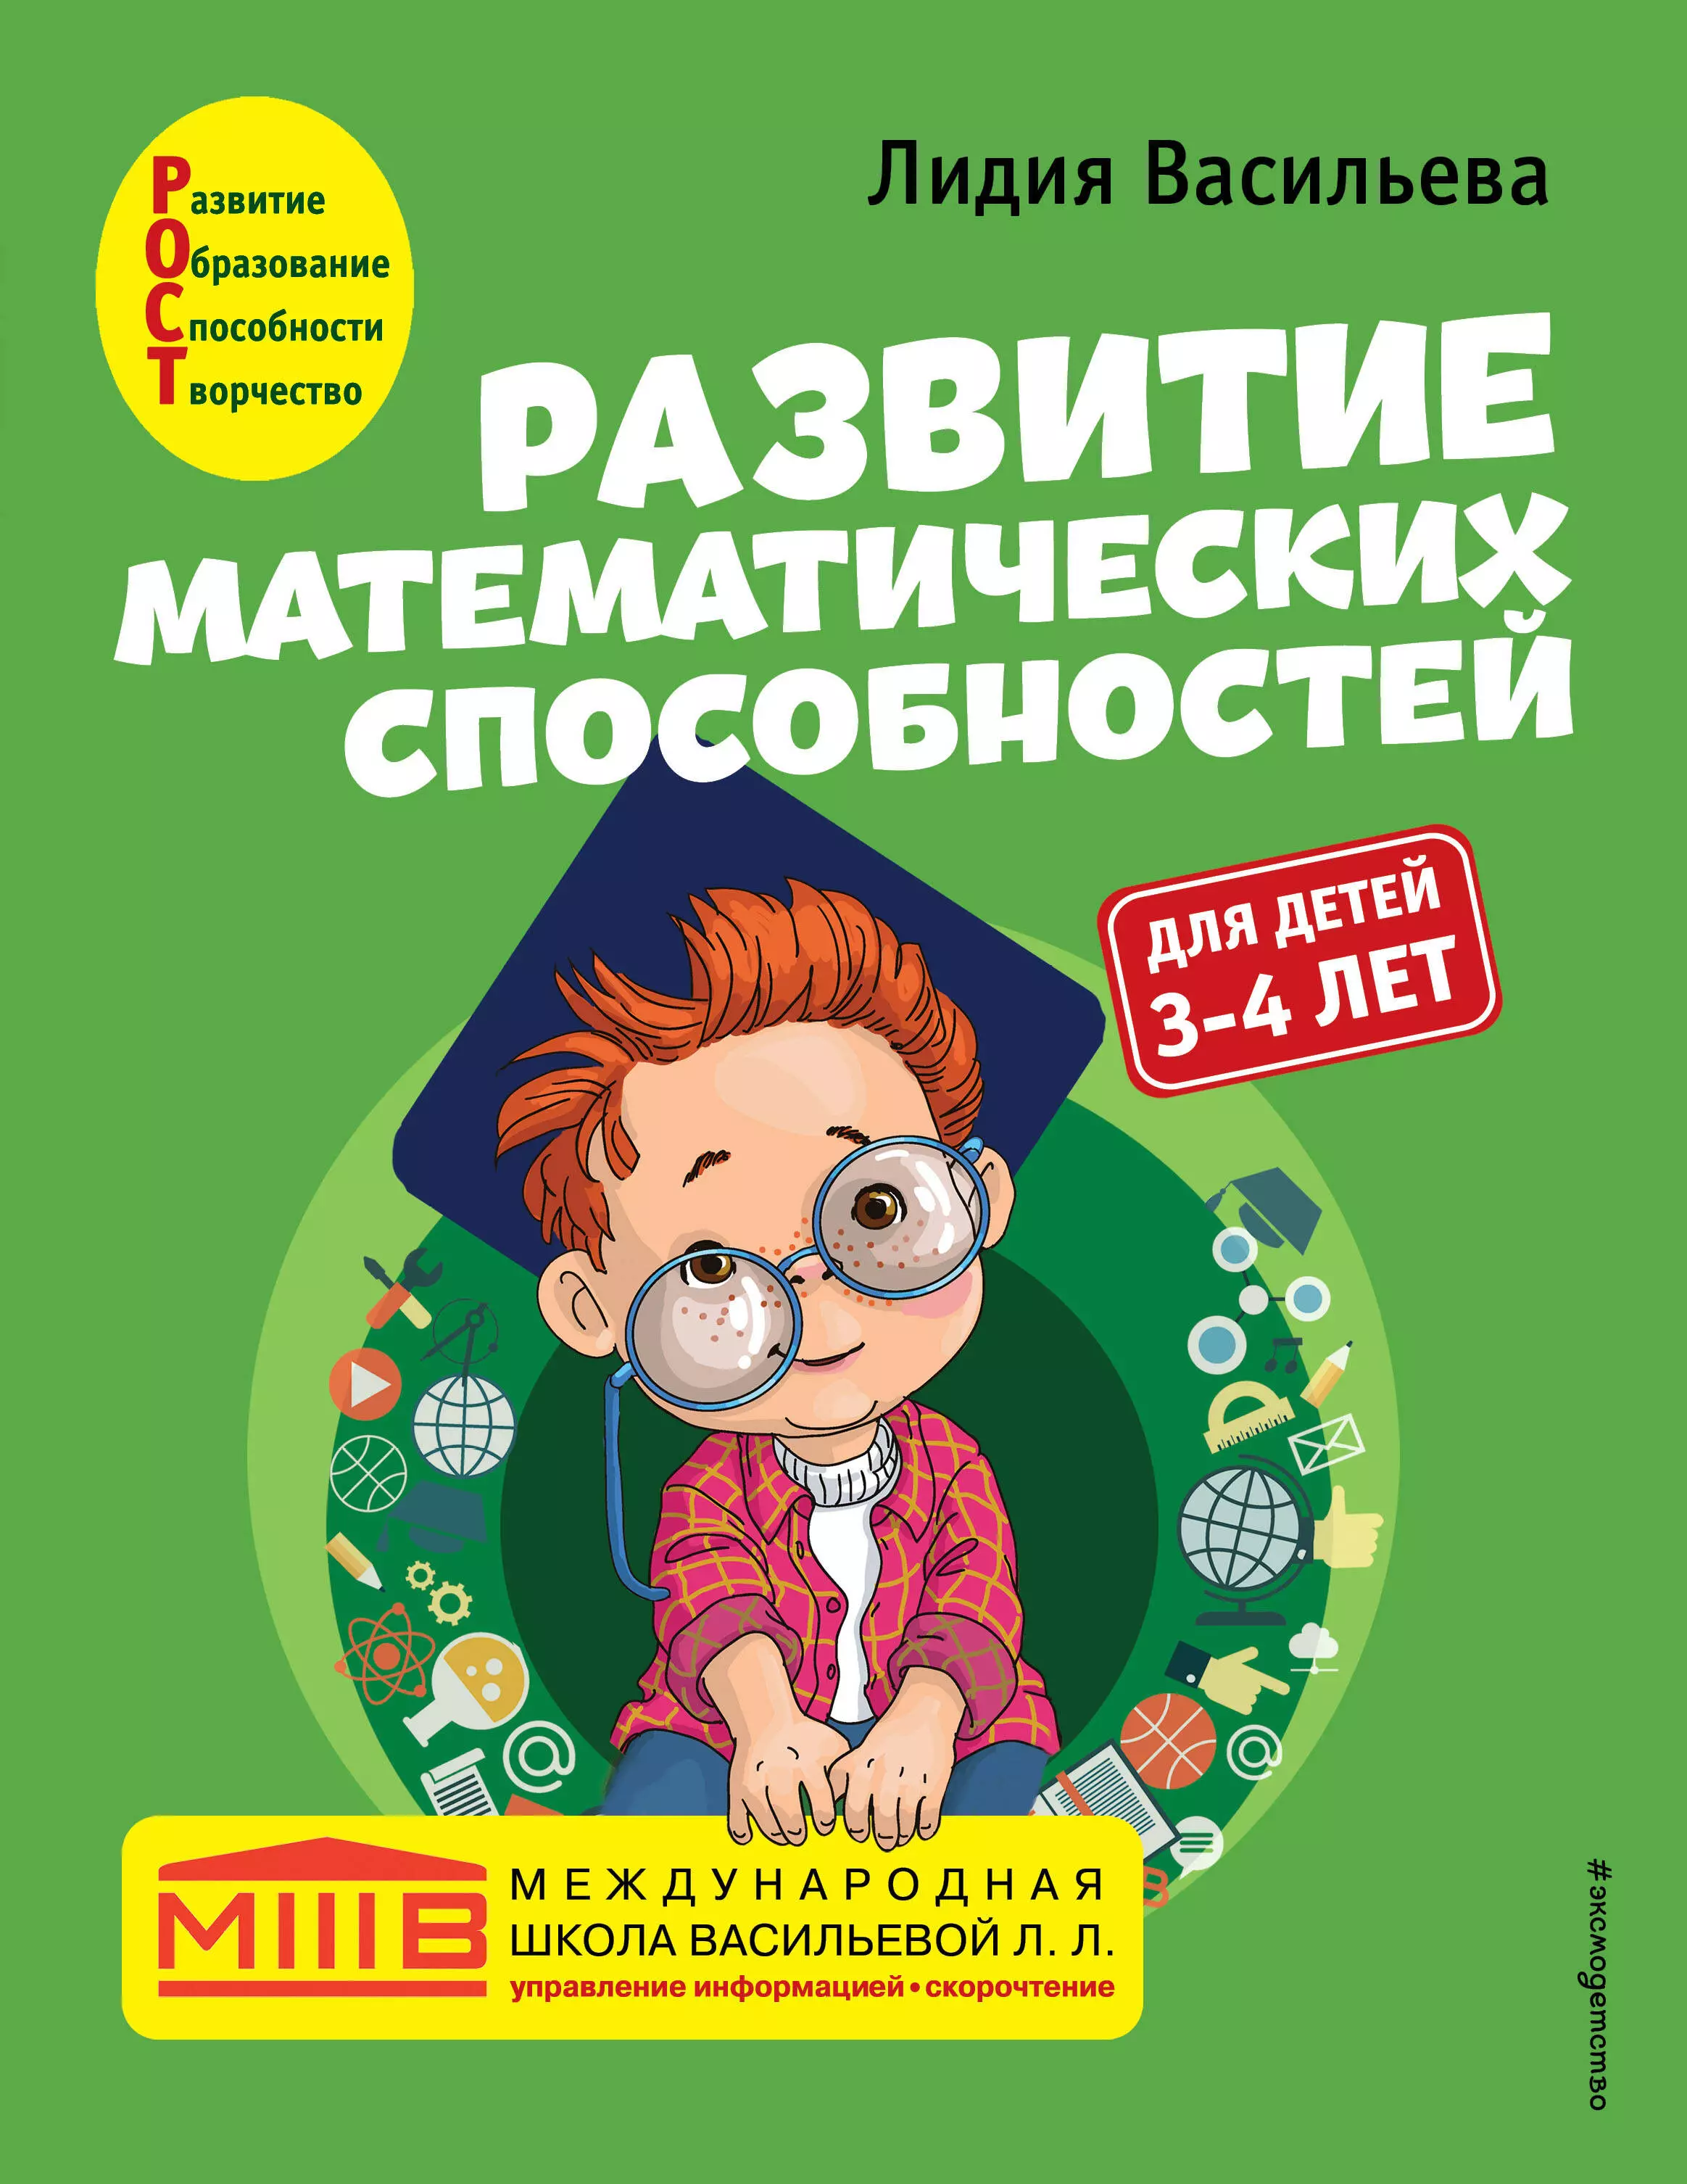 Васильева Лидия Л. Развитие математических способностей: для детей 3-4 лет